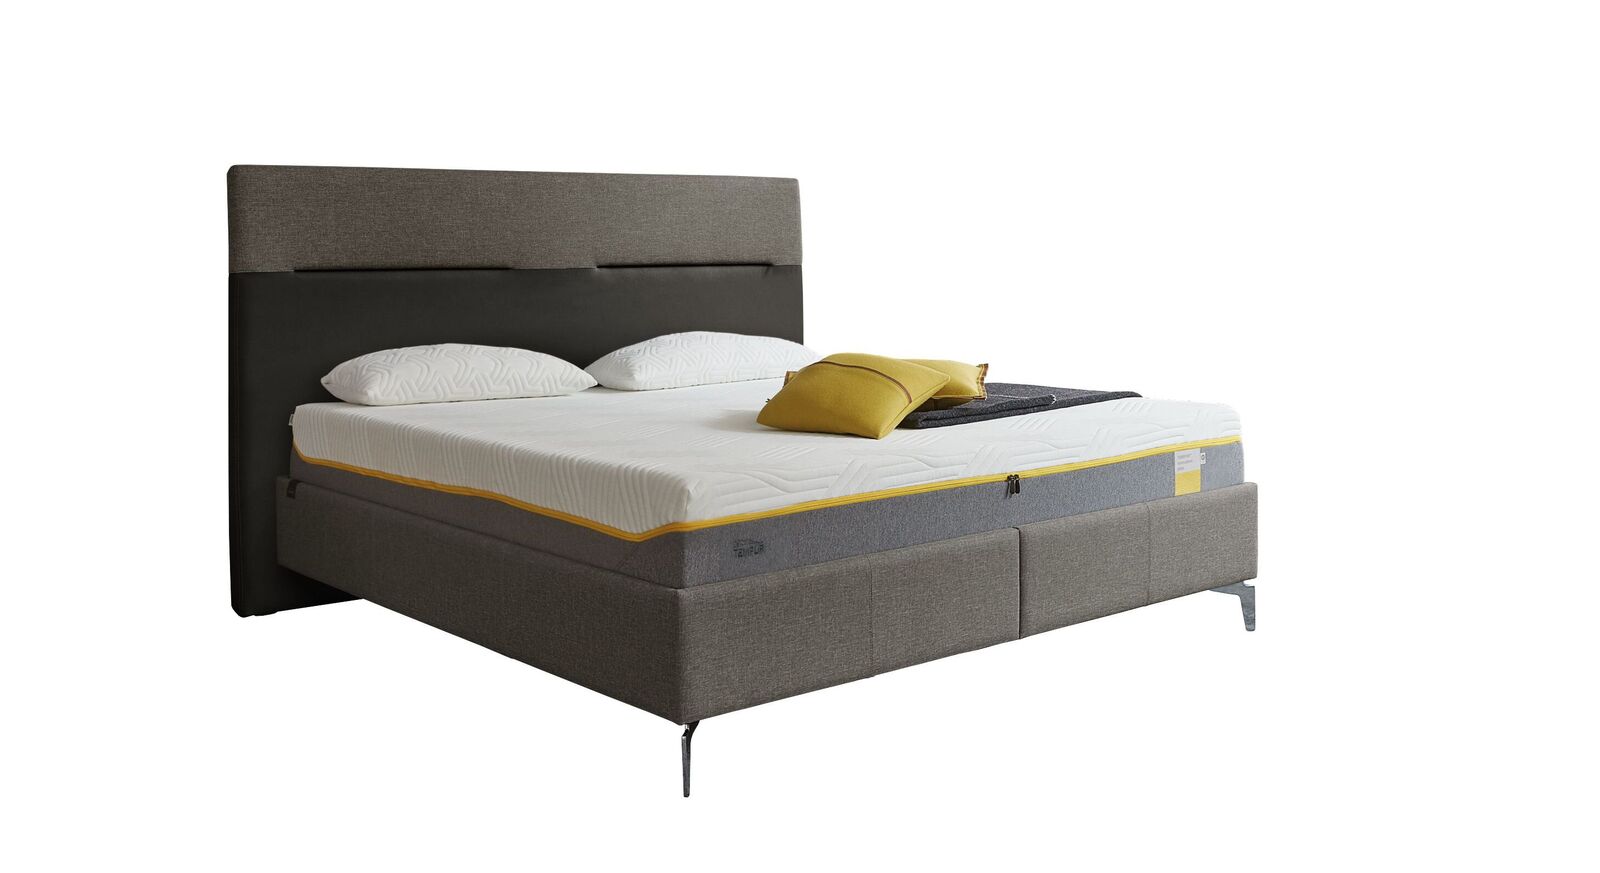 TEMPUR Bett Relax Texture mit Bezug in Webstoff und Kunstleder in Grau